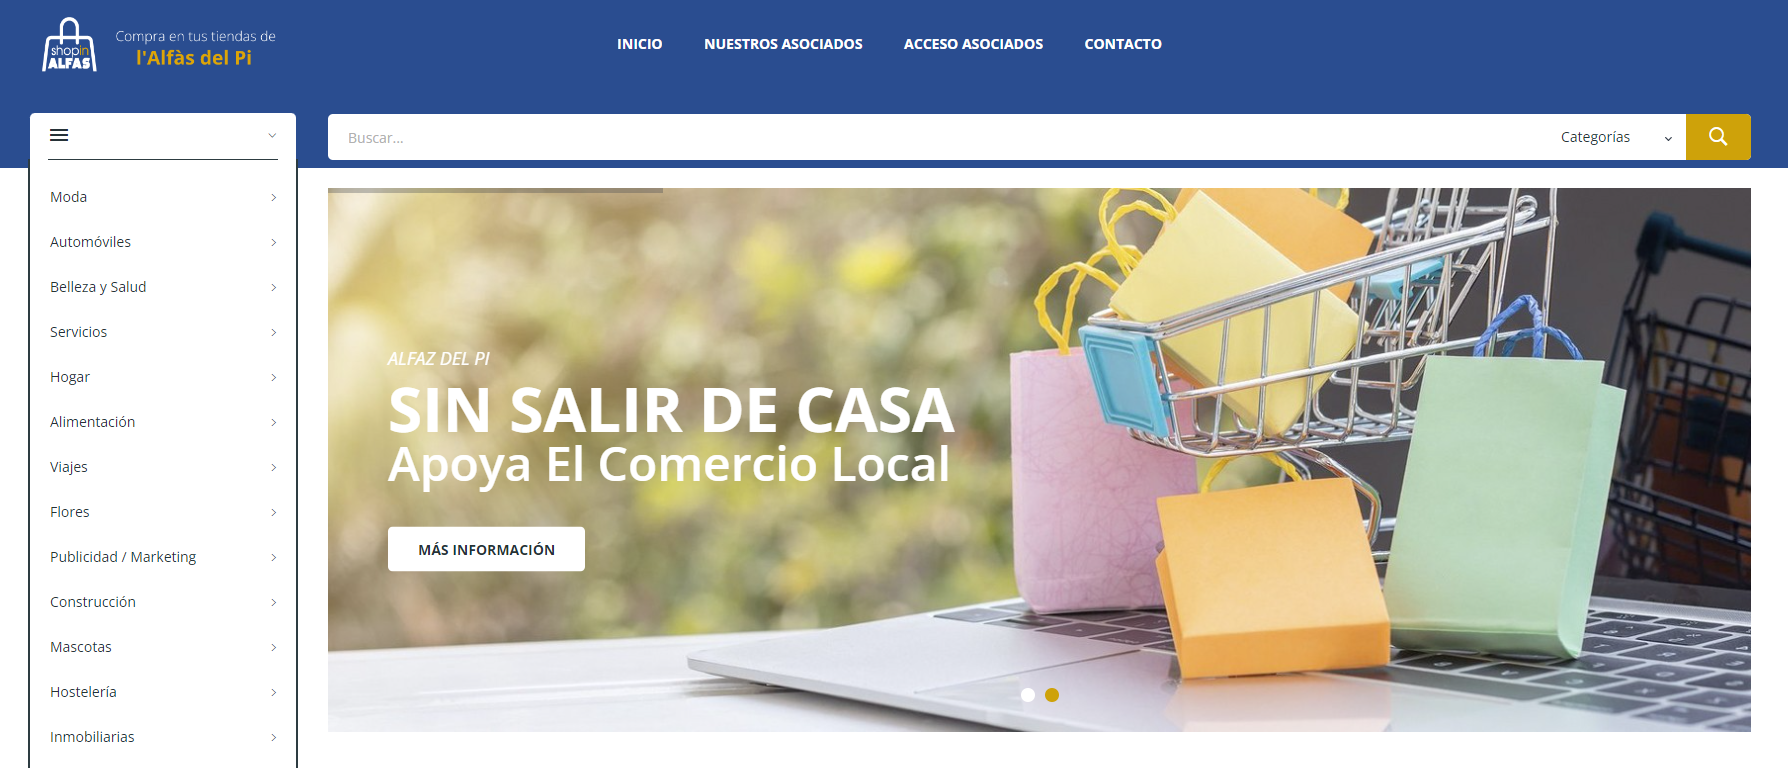 COEMPA lanza ShopInAlfas, un portal de compras online del comercio local de l’Alfàs del Pi